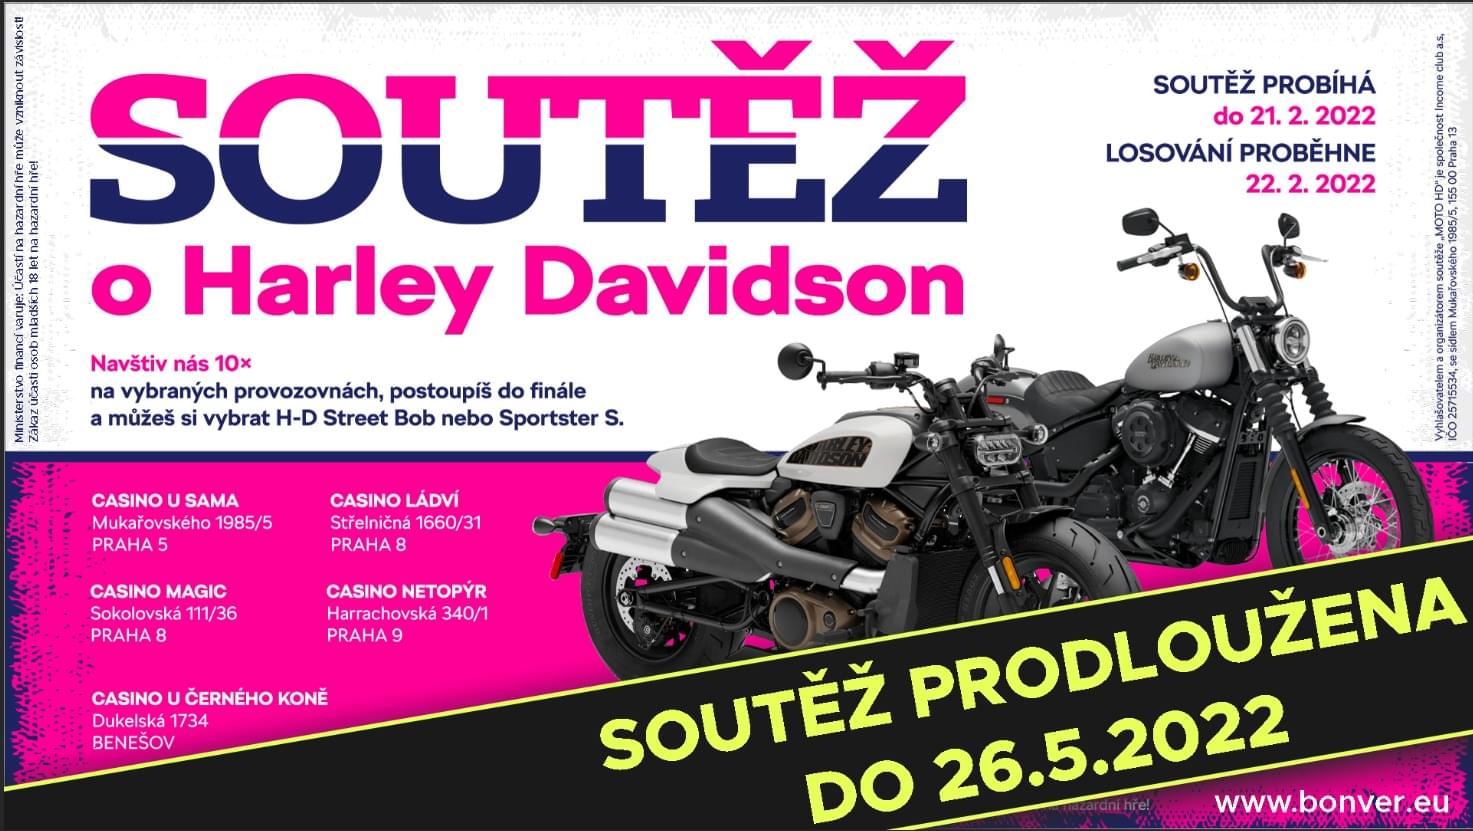 Reklama na soutěž o motorku Harley Davidson, podmínky soutěže, motorky, informace